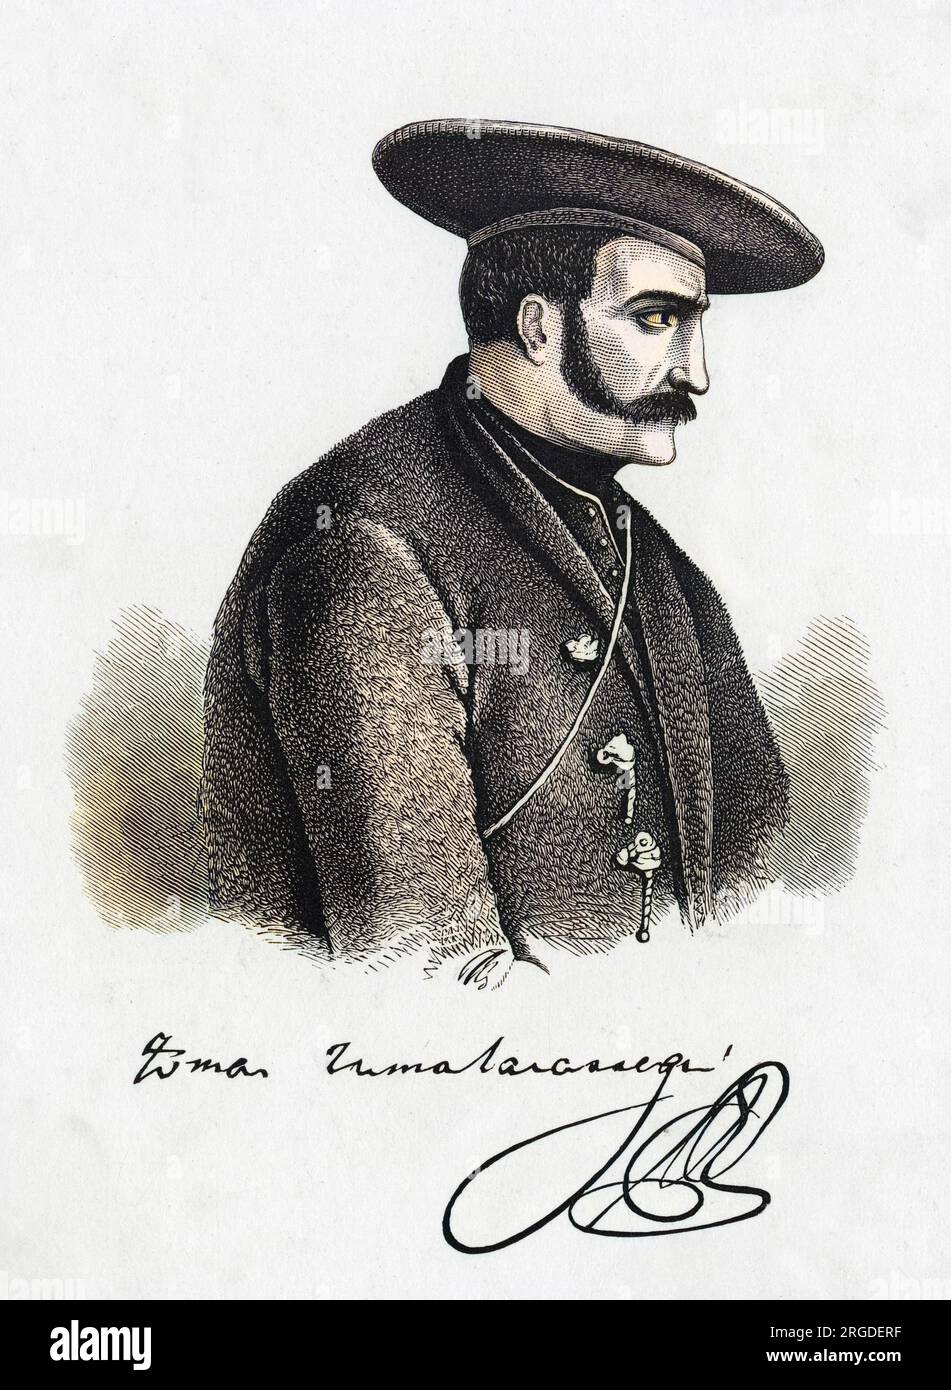 TOMAS ZUMALACARREGUI generale carlista spagnolo con il suo autografo Foto Stock